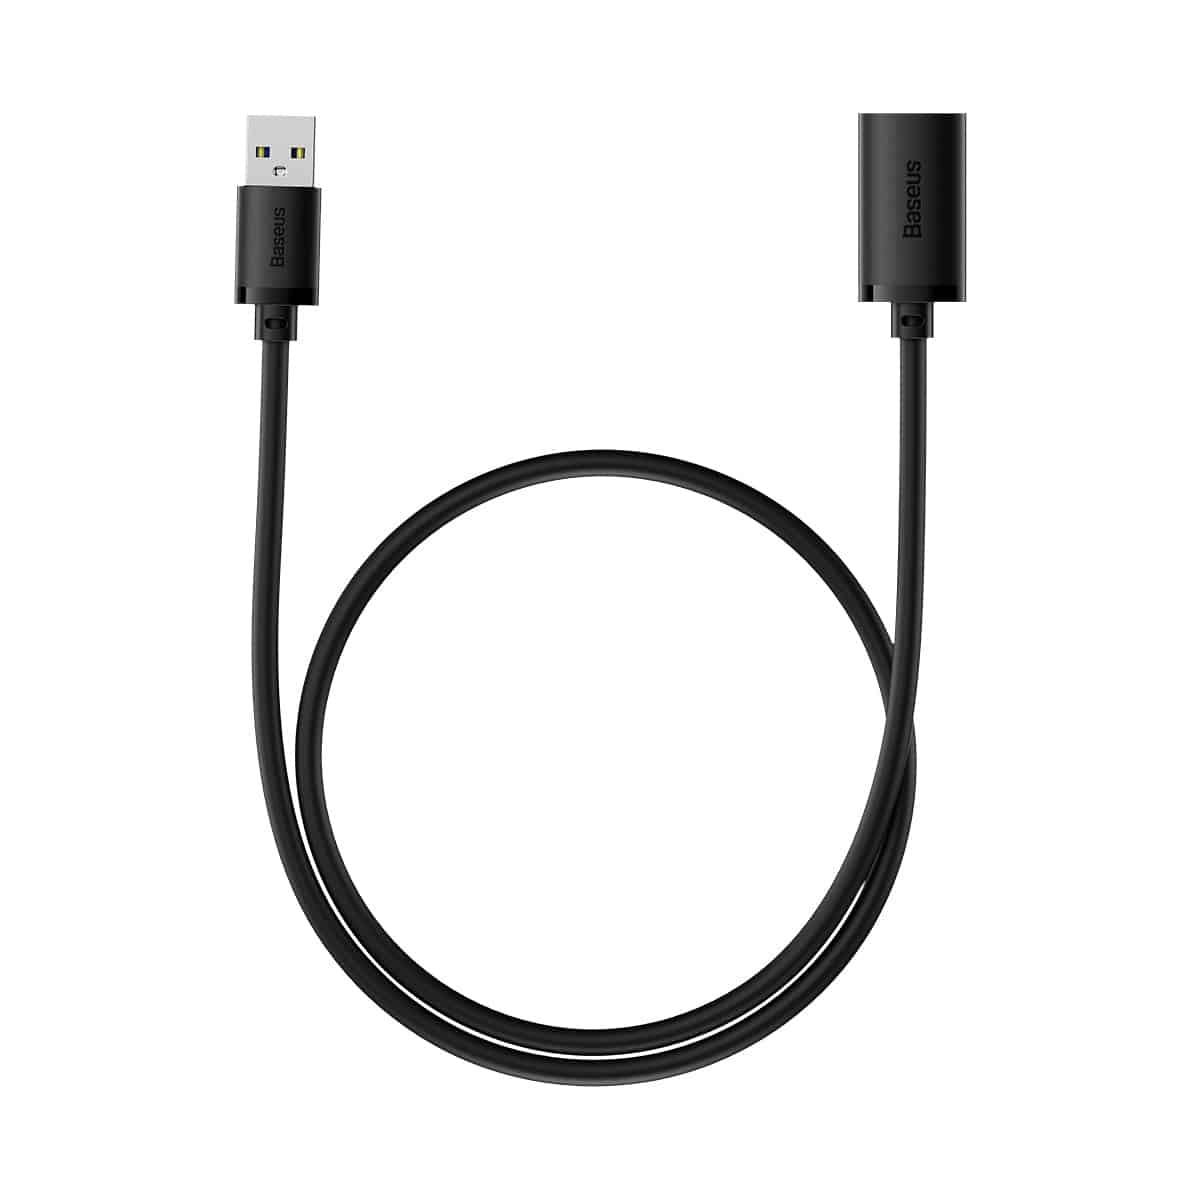 Baseus AirJoy Series USB3.0 Extension Cable